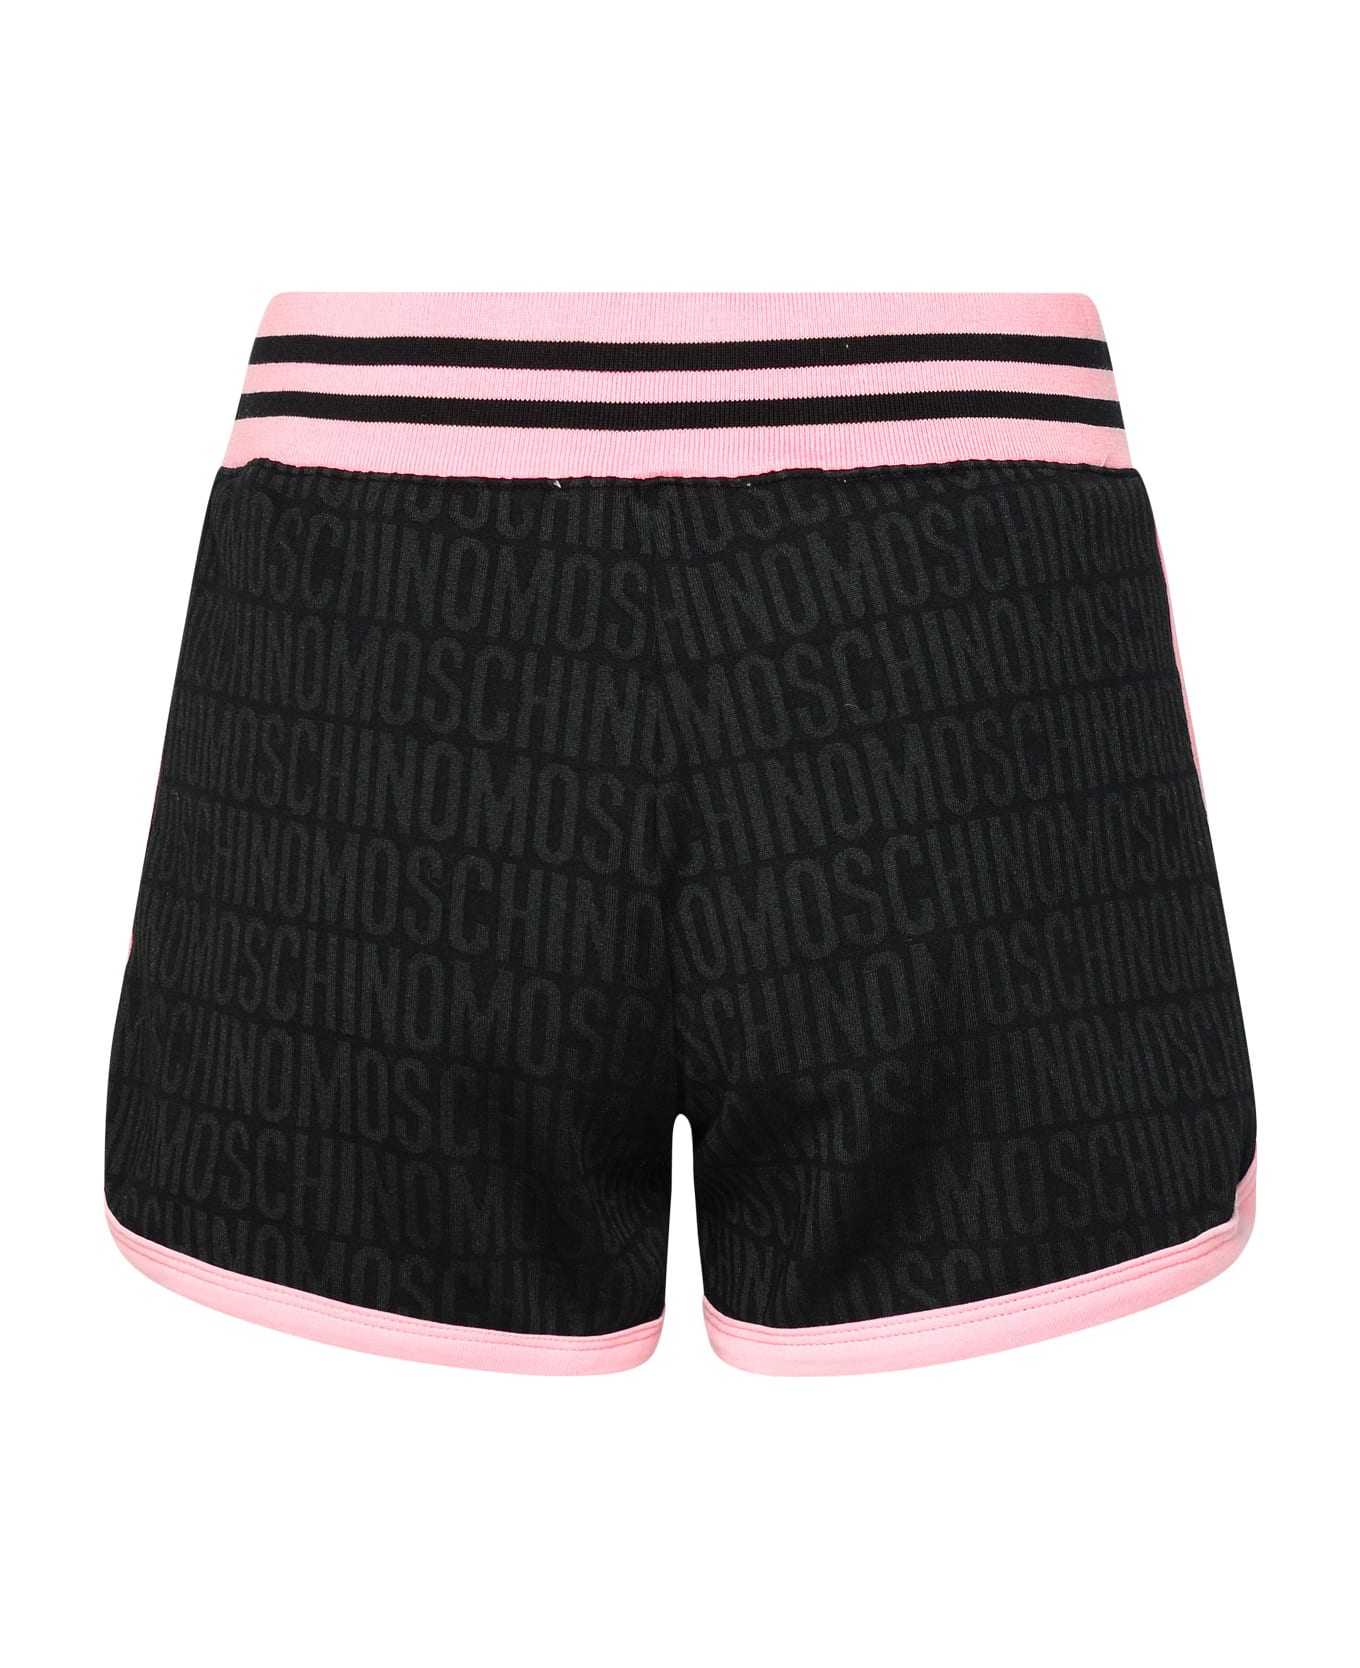 Moschino Black Cotton Blend Shorts - Black ショートパンツ